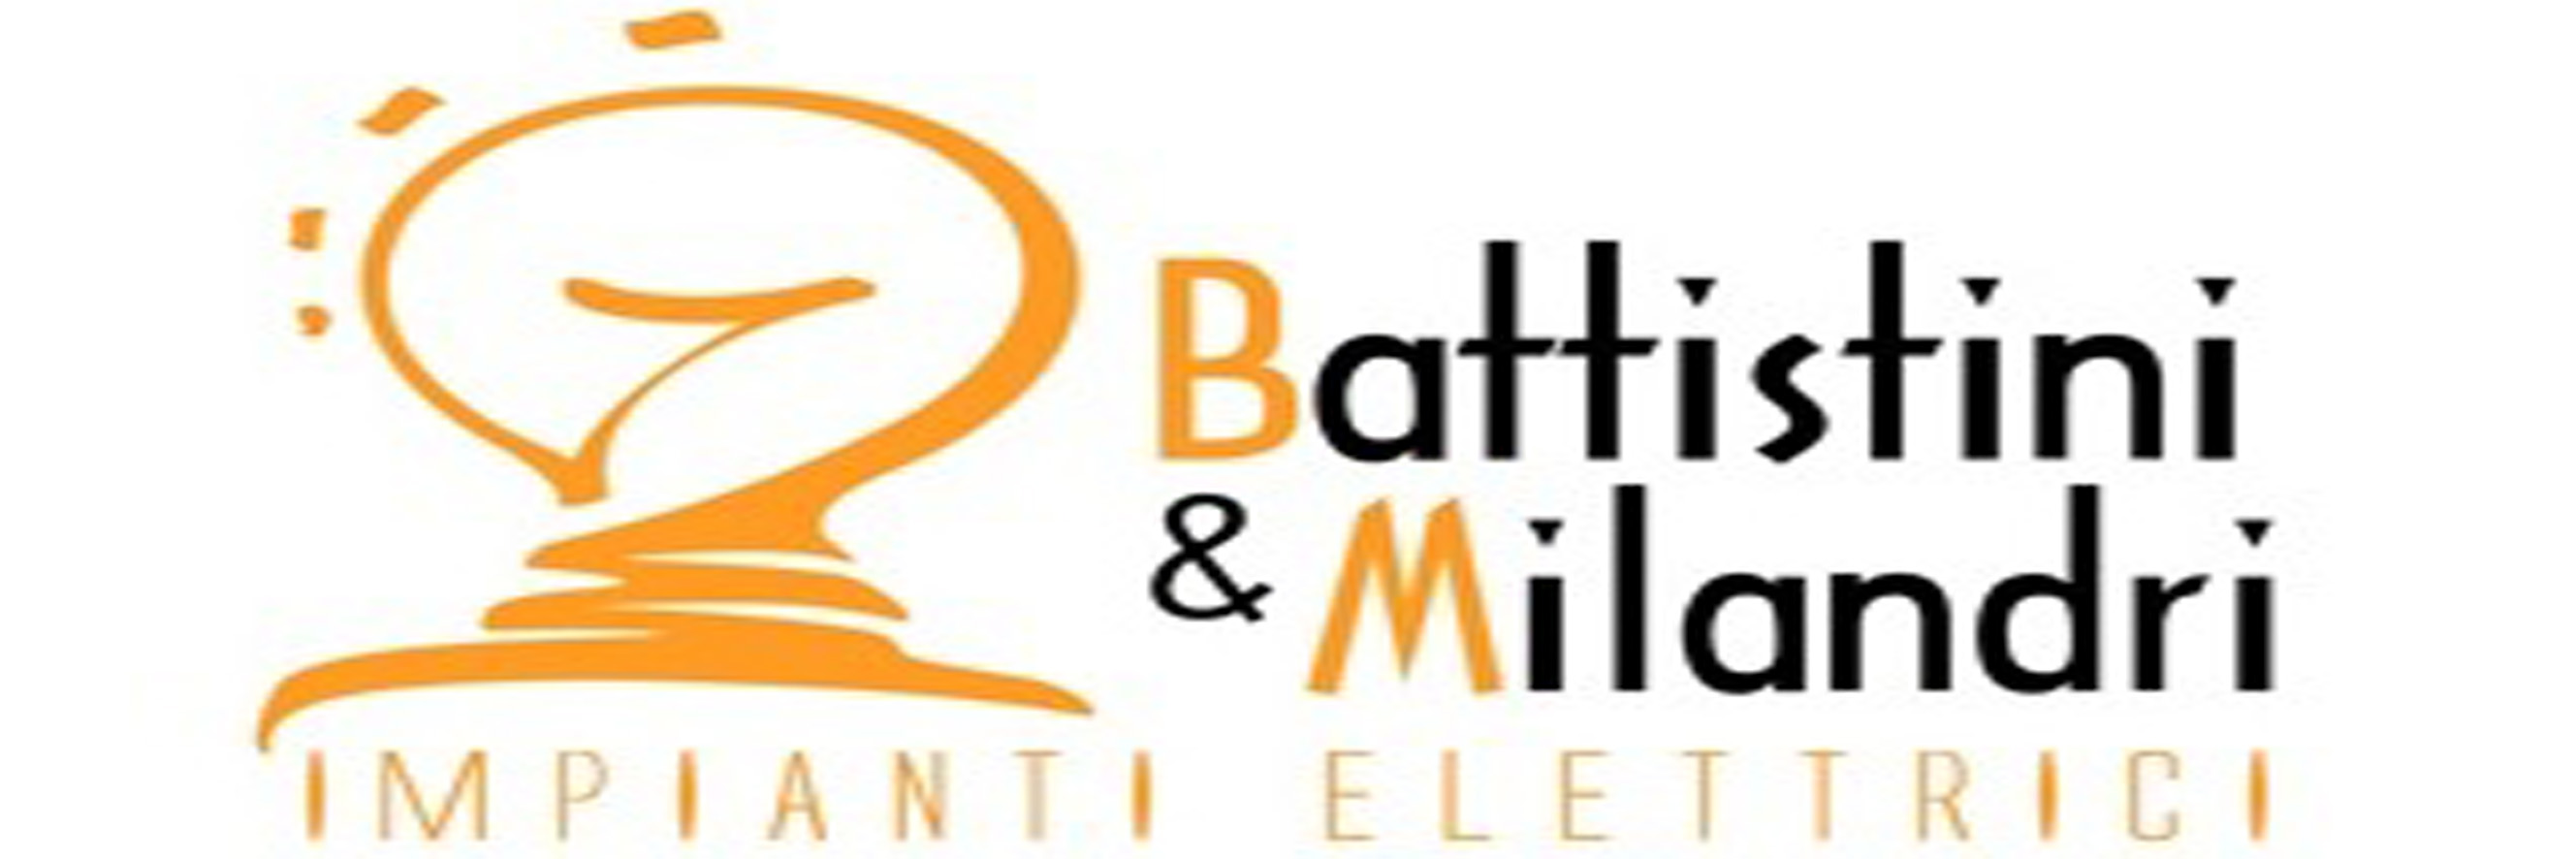 Battistini e Milandri